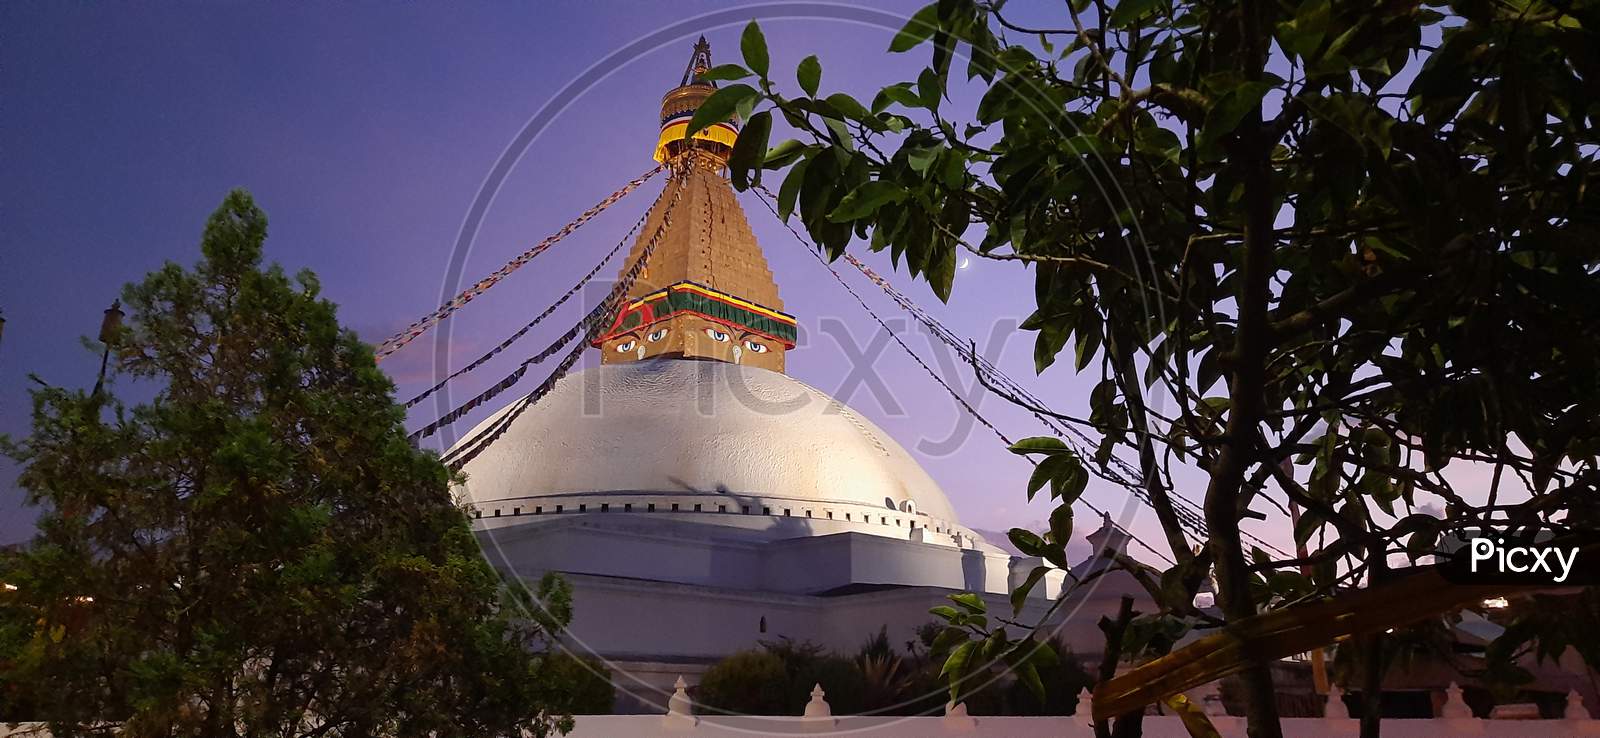 Buddha stupa